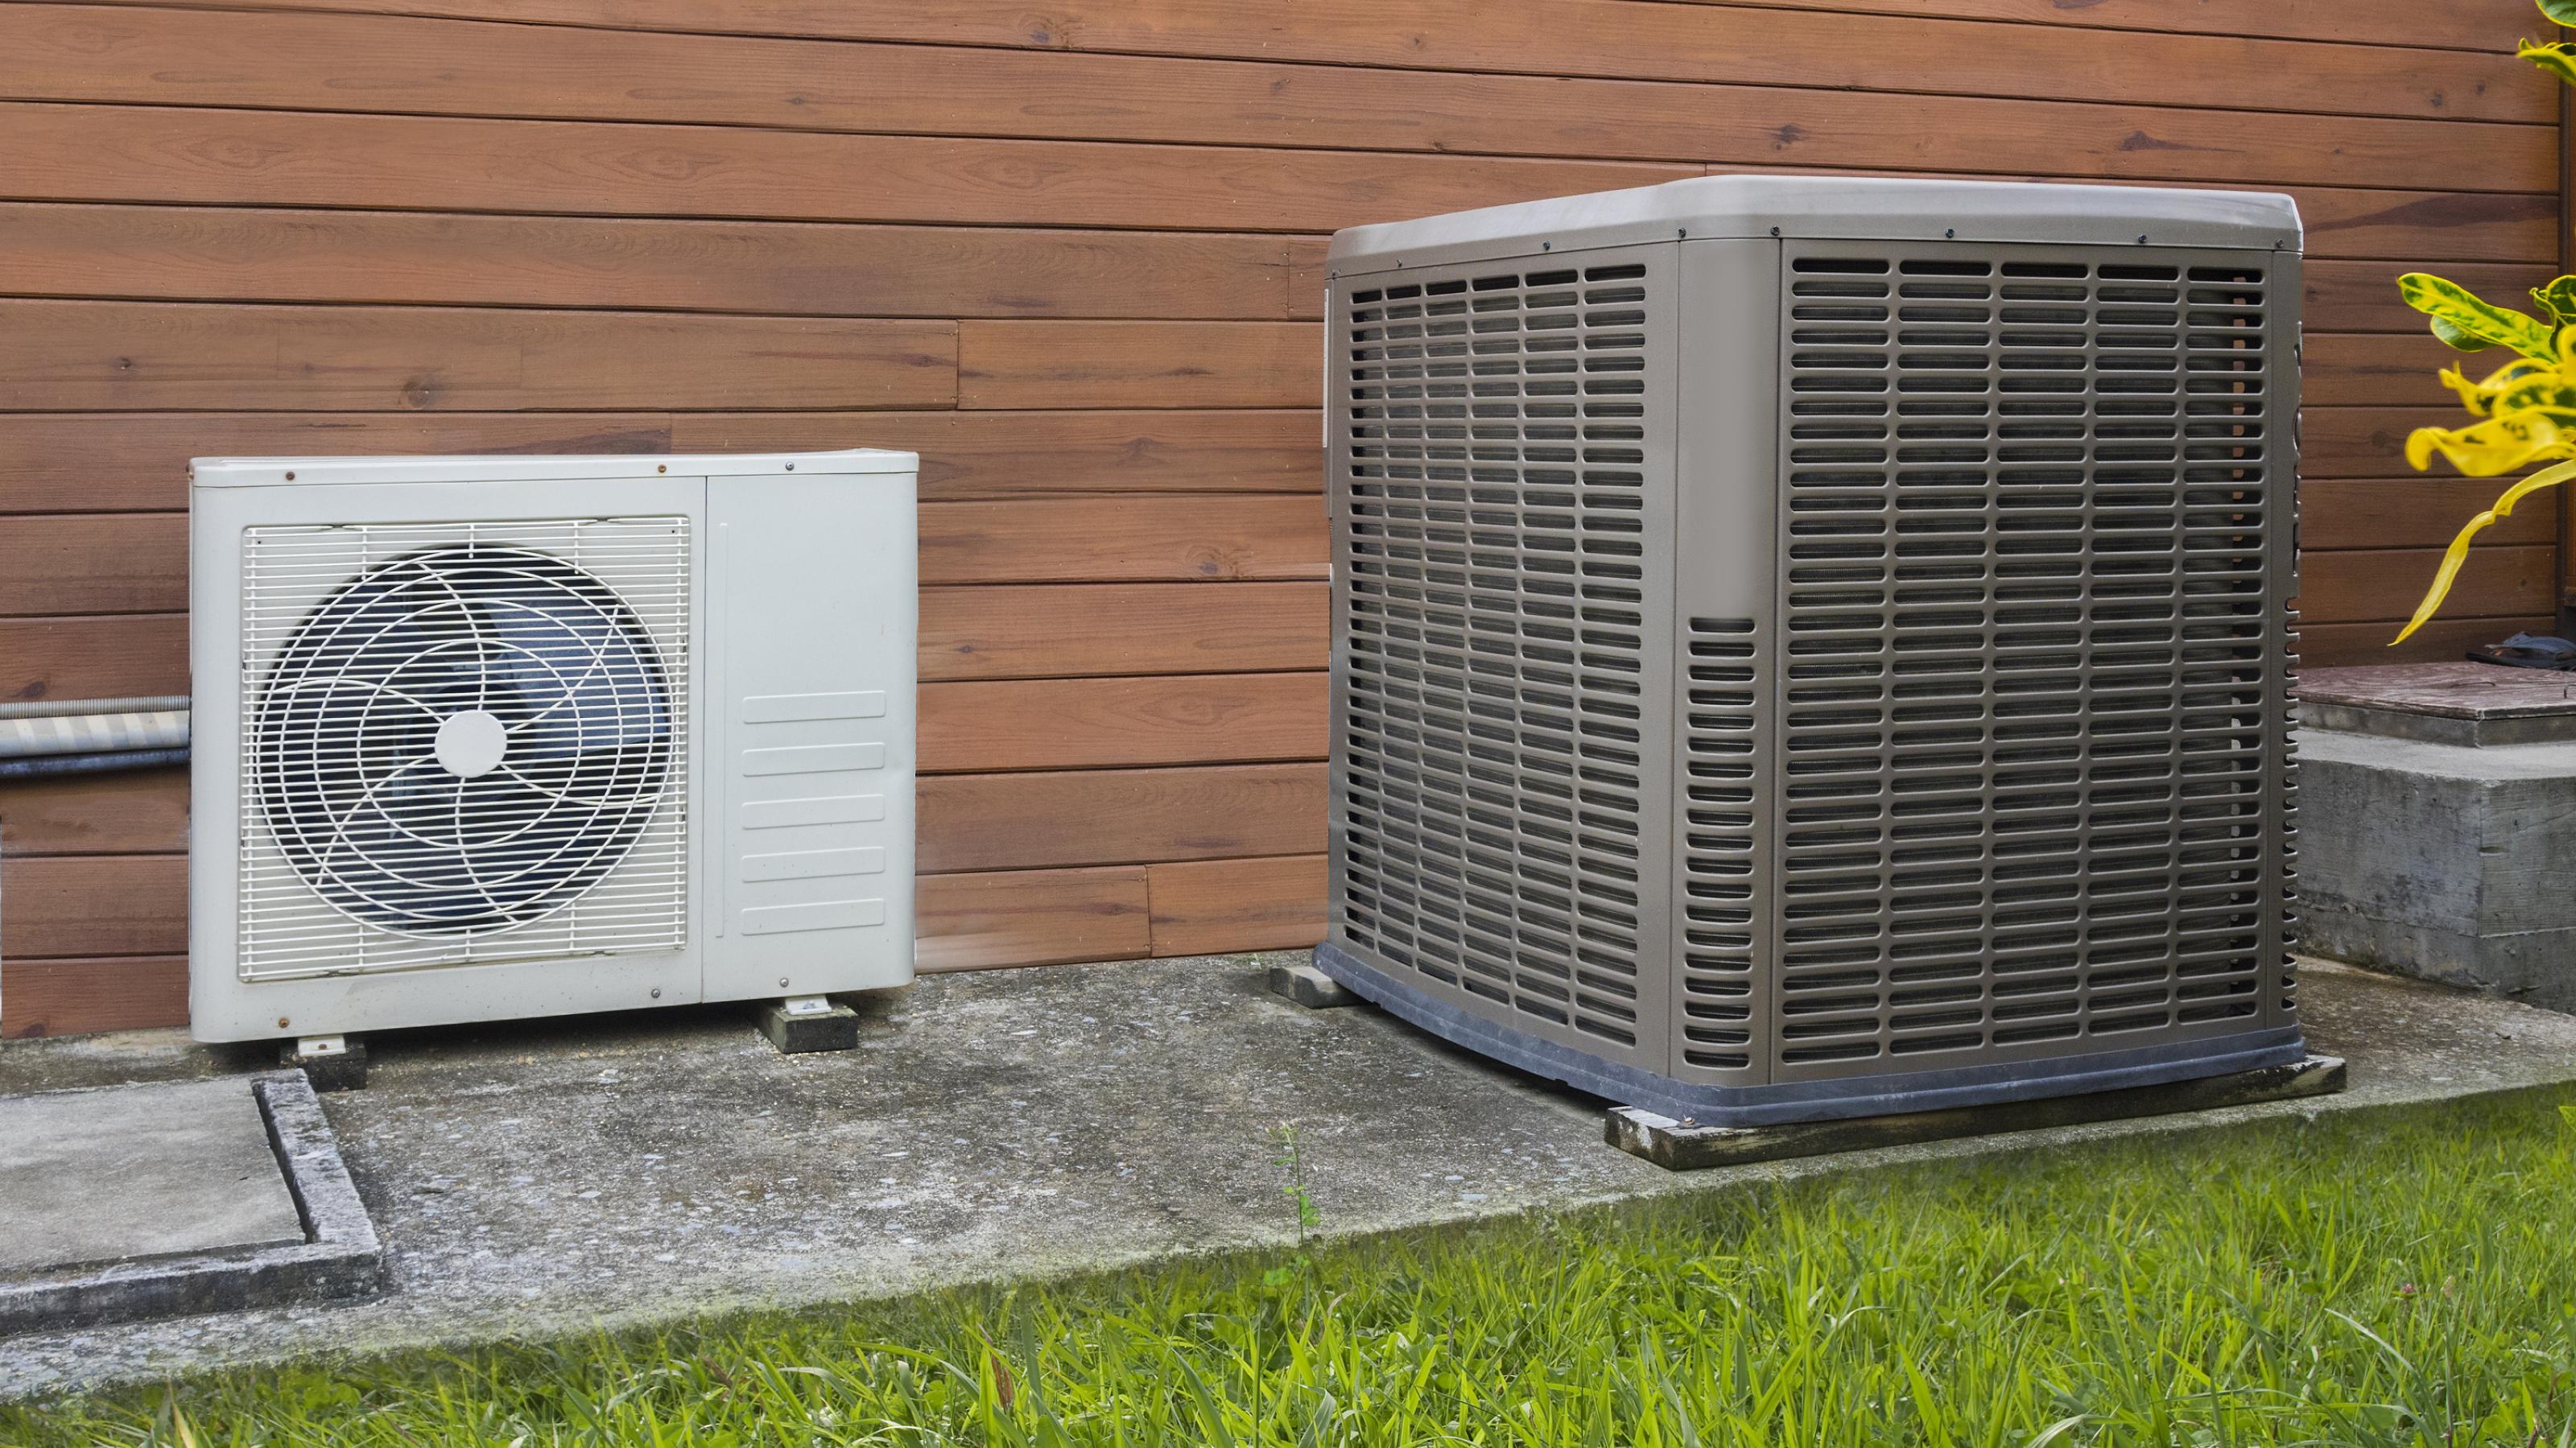 An der Außenseite eines Hauses stehen zwei unterschiedliche Klimaanlagen-Wärmepumpen auf einem Betonfundament.